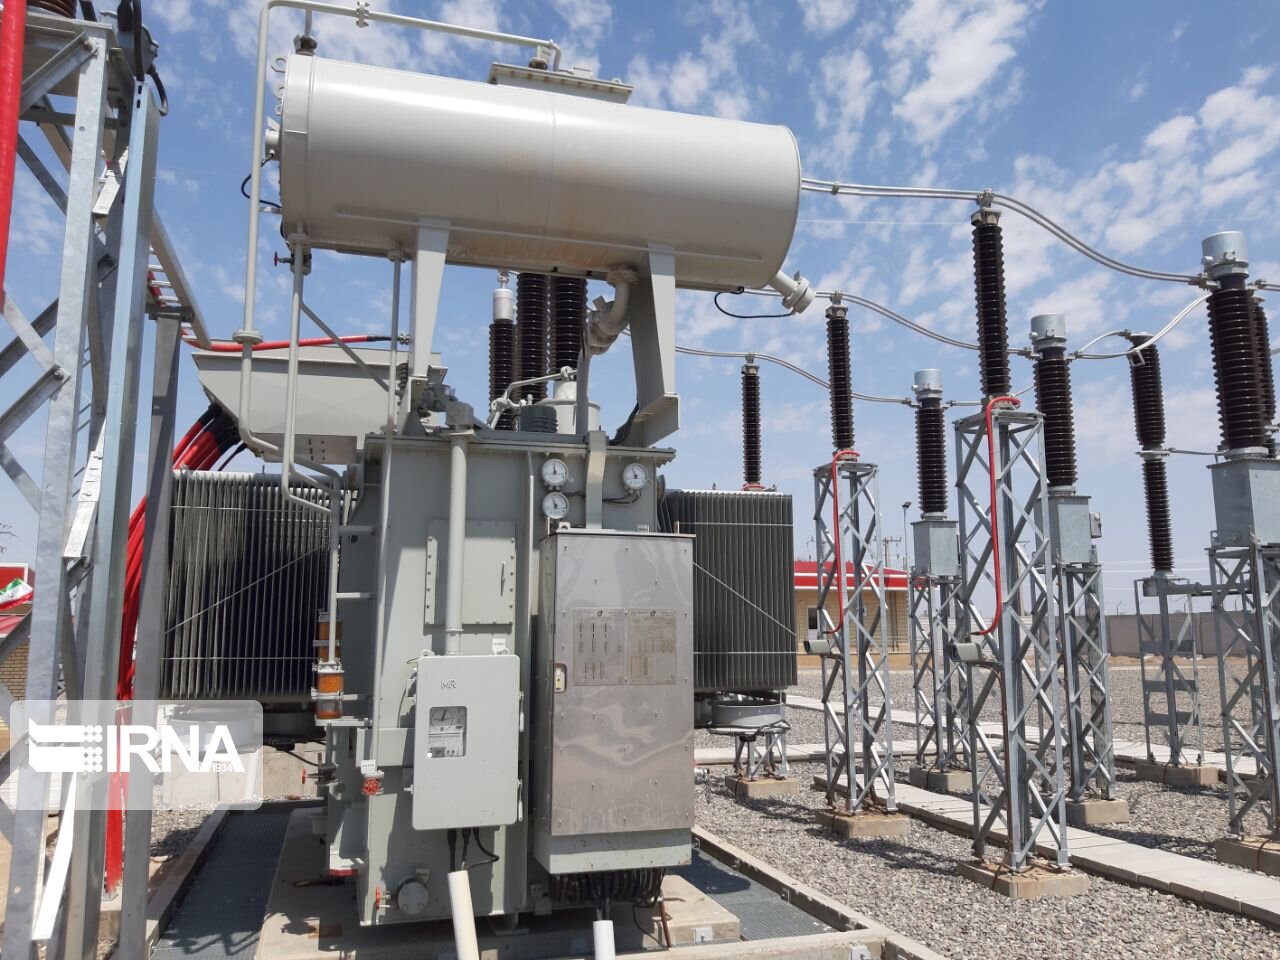 ۱۵۵ دستگاه دولتی و خدماتی استان کرمانشاه مجهز به مولد برق اضطراری است